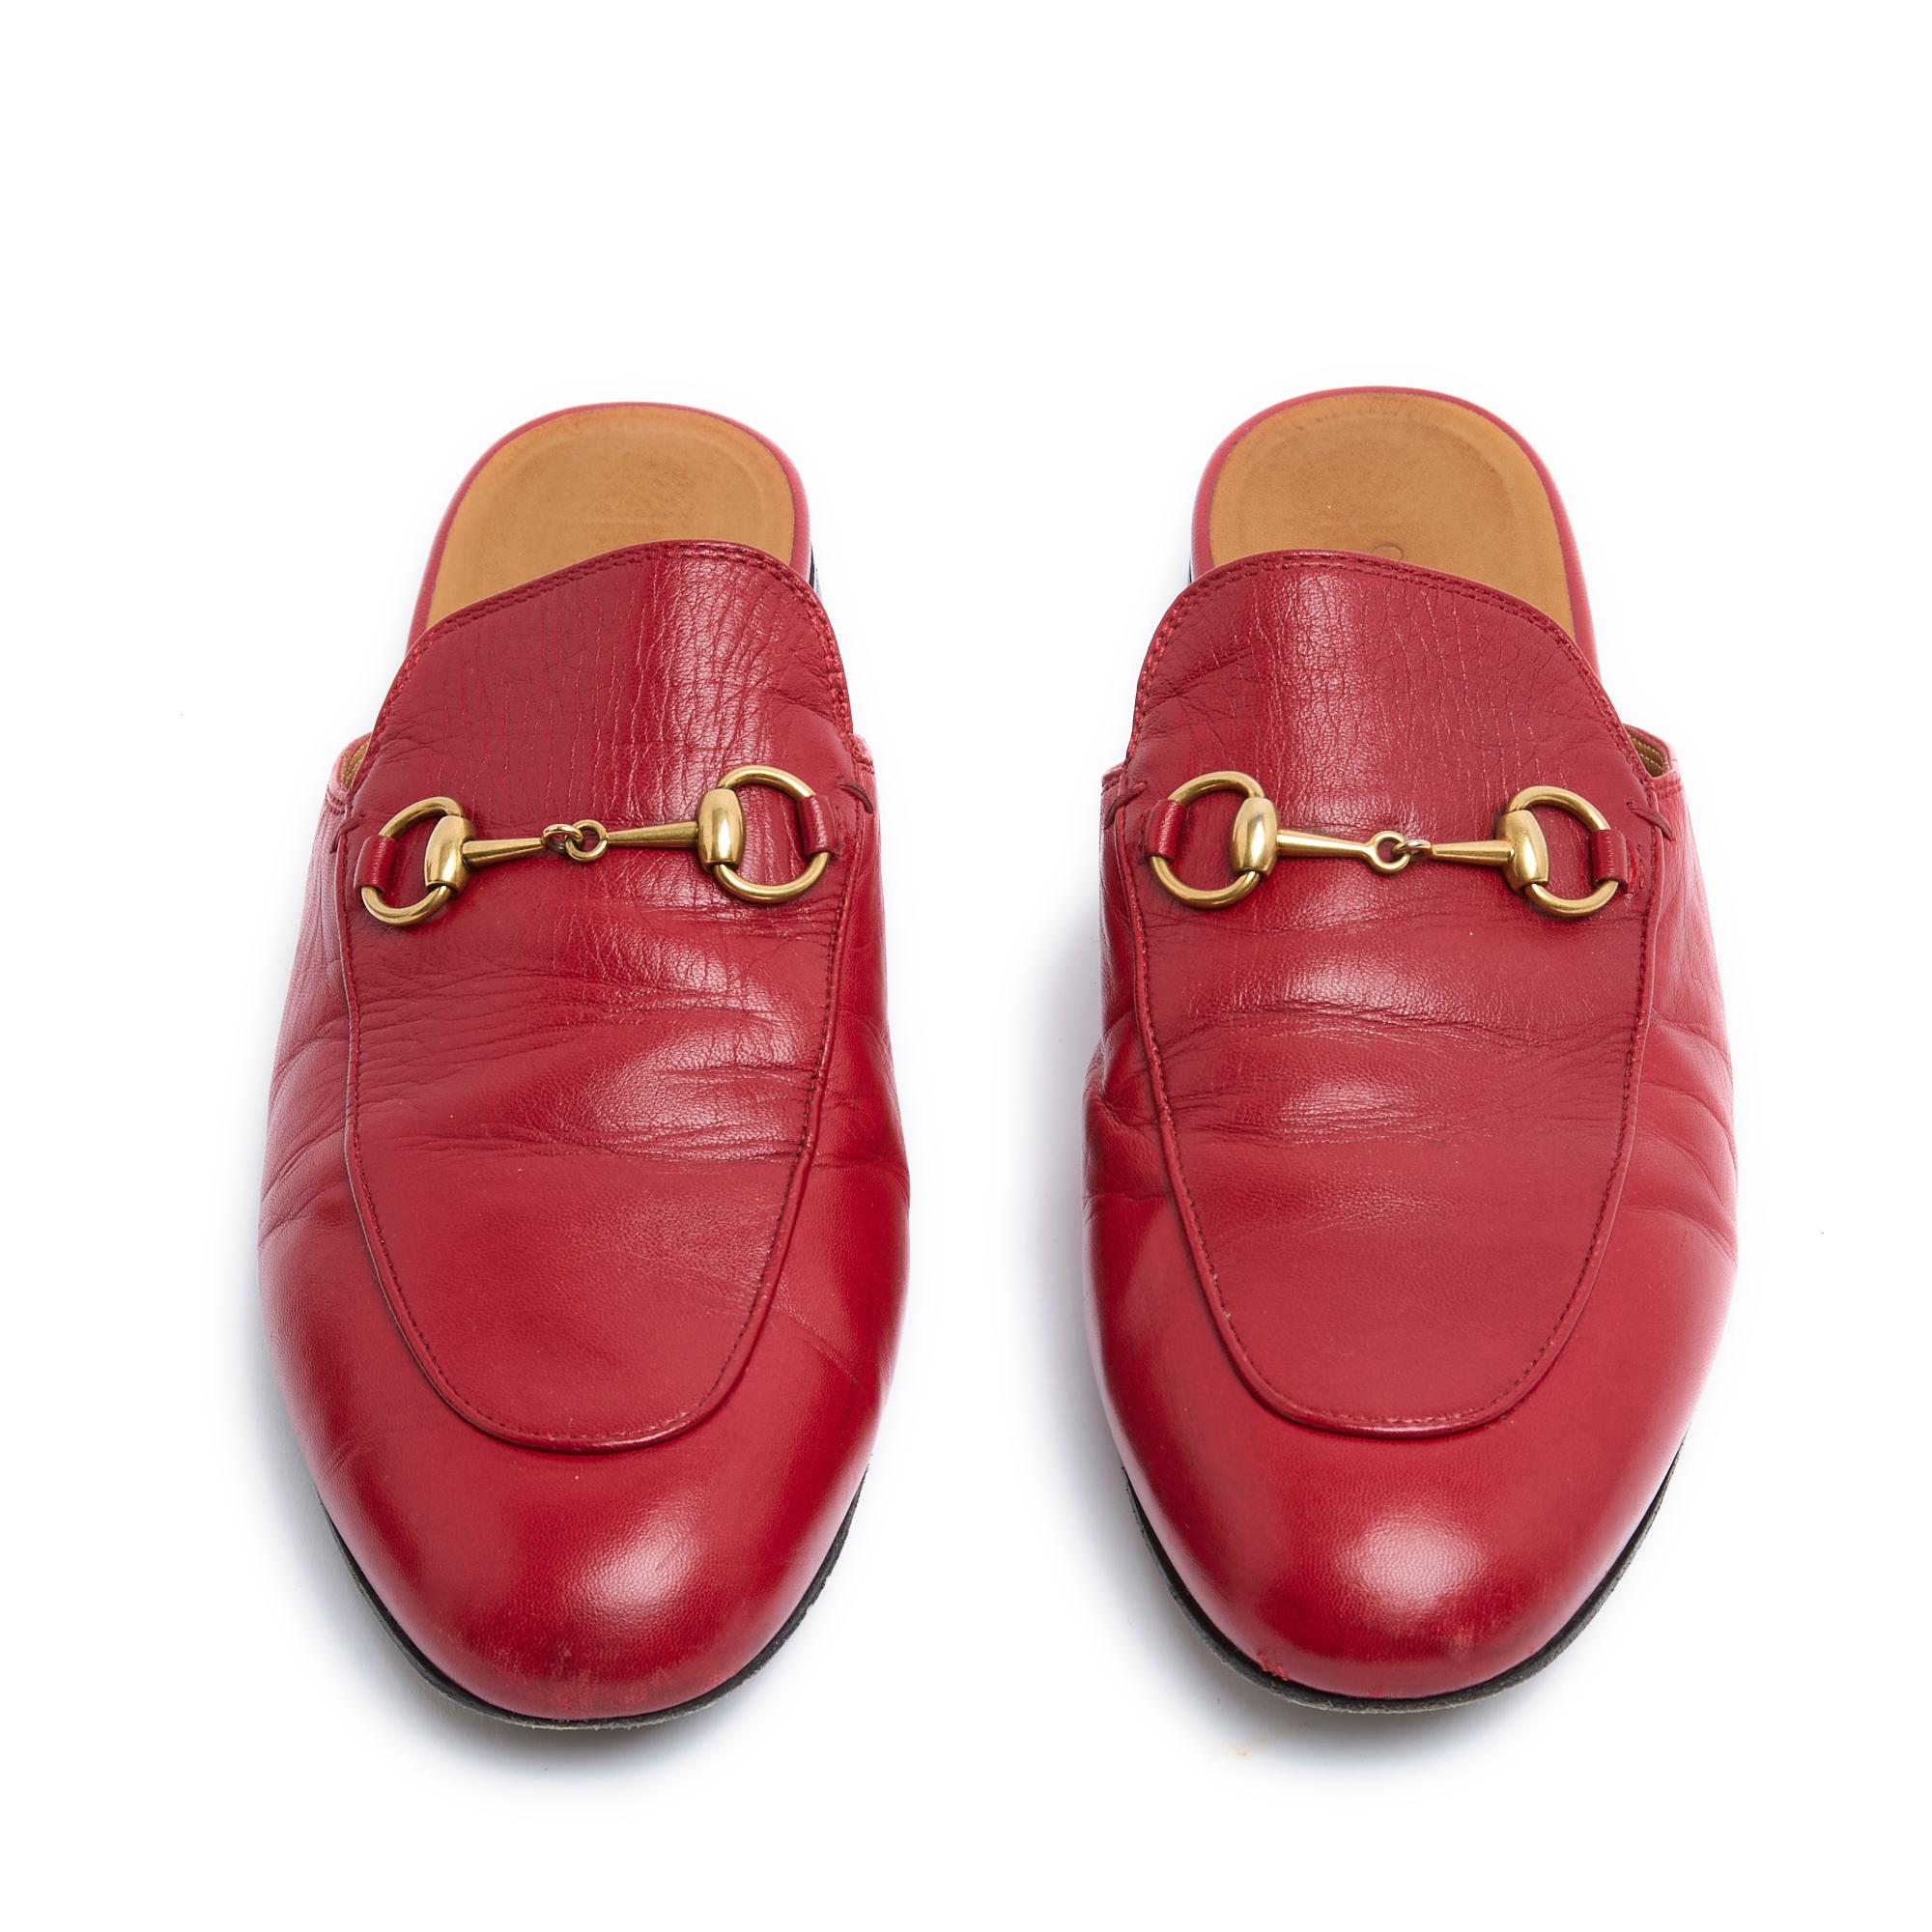 Gucci Princetown Modell Loafers aus rotem Leder mit Hufeisenmuster aus goldenem Metall. Größe 39EU oder UK6 und US8.5, Absatz 1 cm, Innensohle 25 cm (fällt etwas klein aus). Die Pantoletten wurden getragen, sind aber in sehr gutem Zustand, perfekt